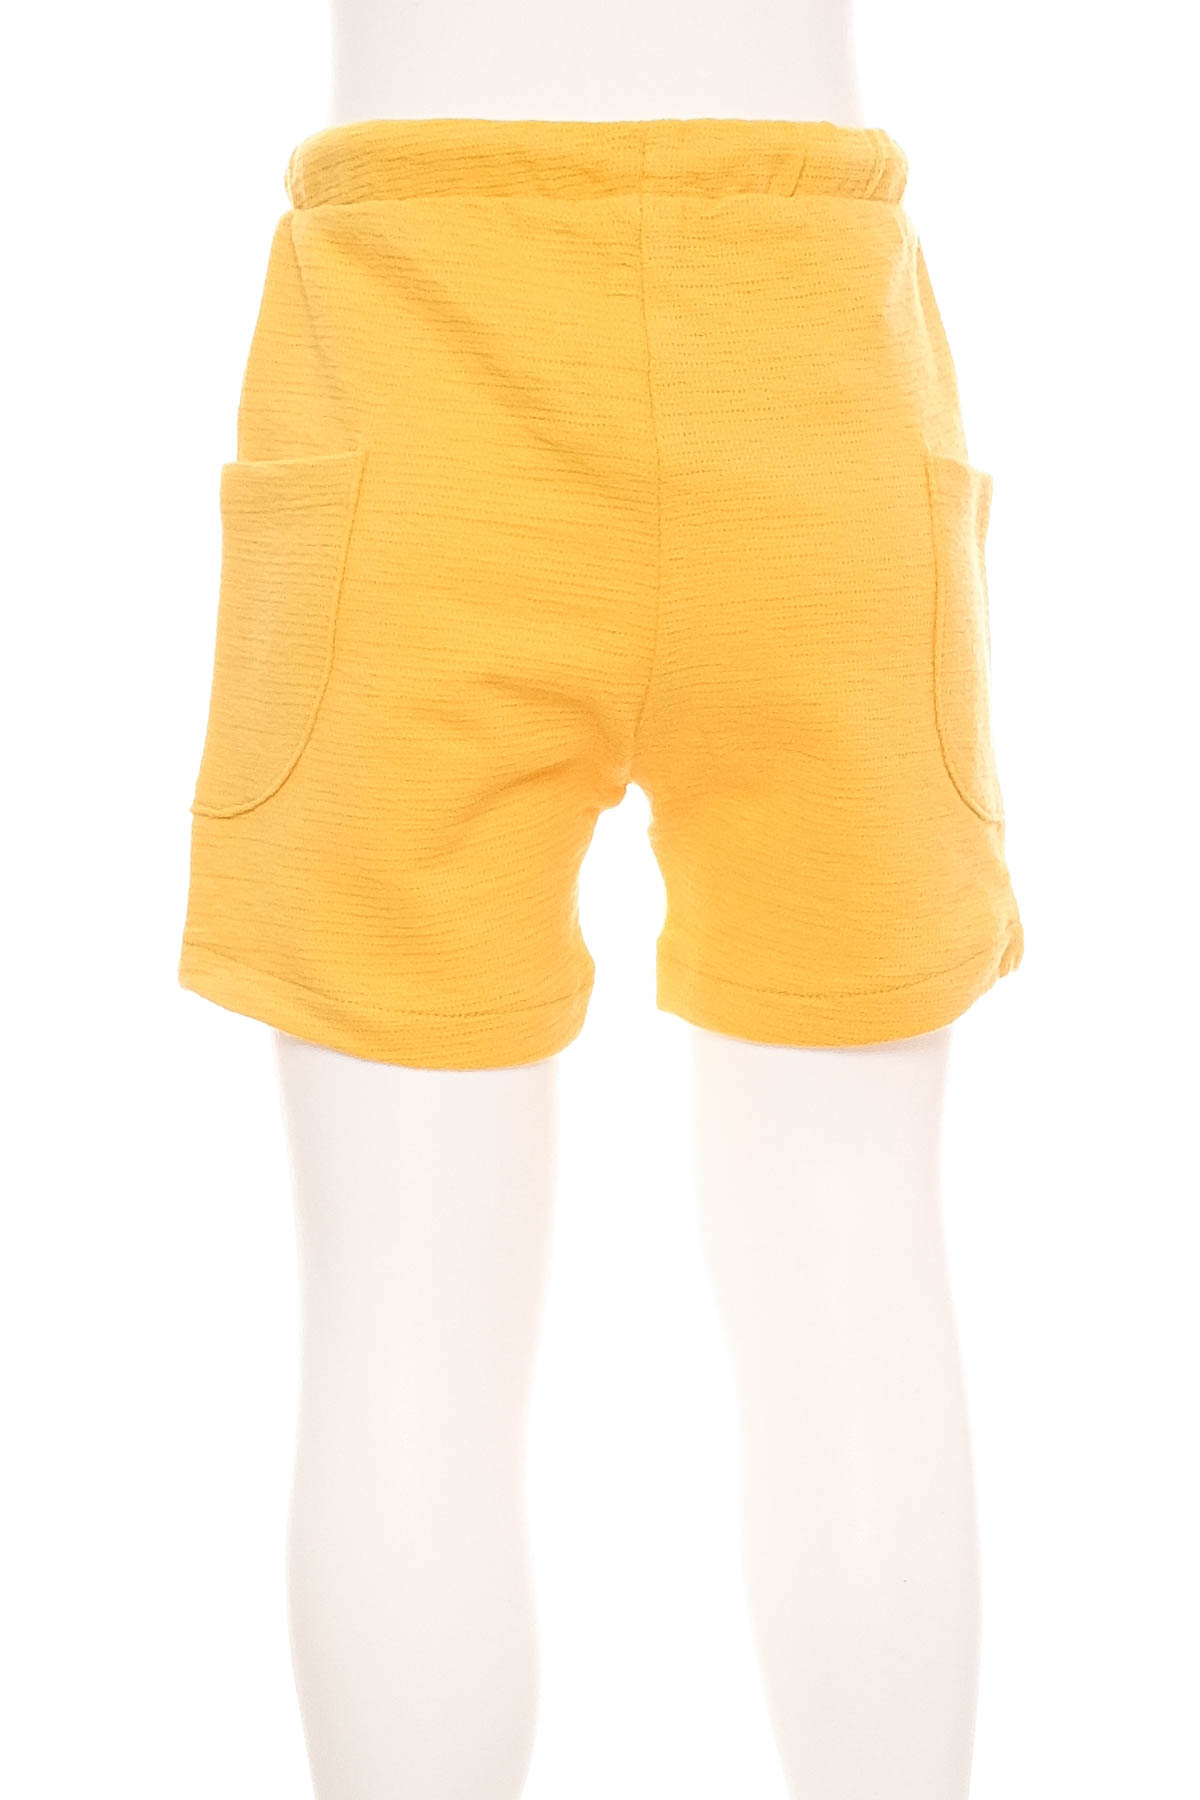 Spodnie niemowlęce dla chłopca - Fagottino by OVS - 1